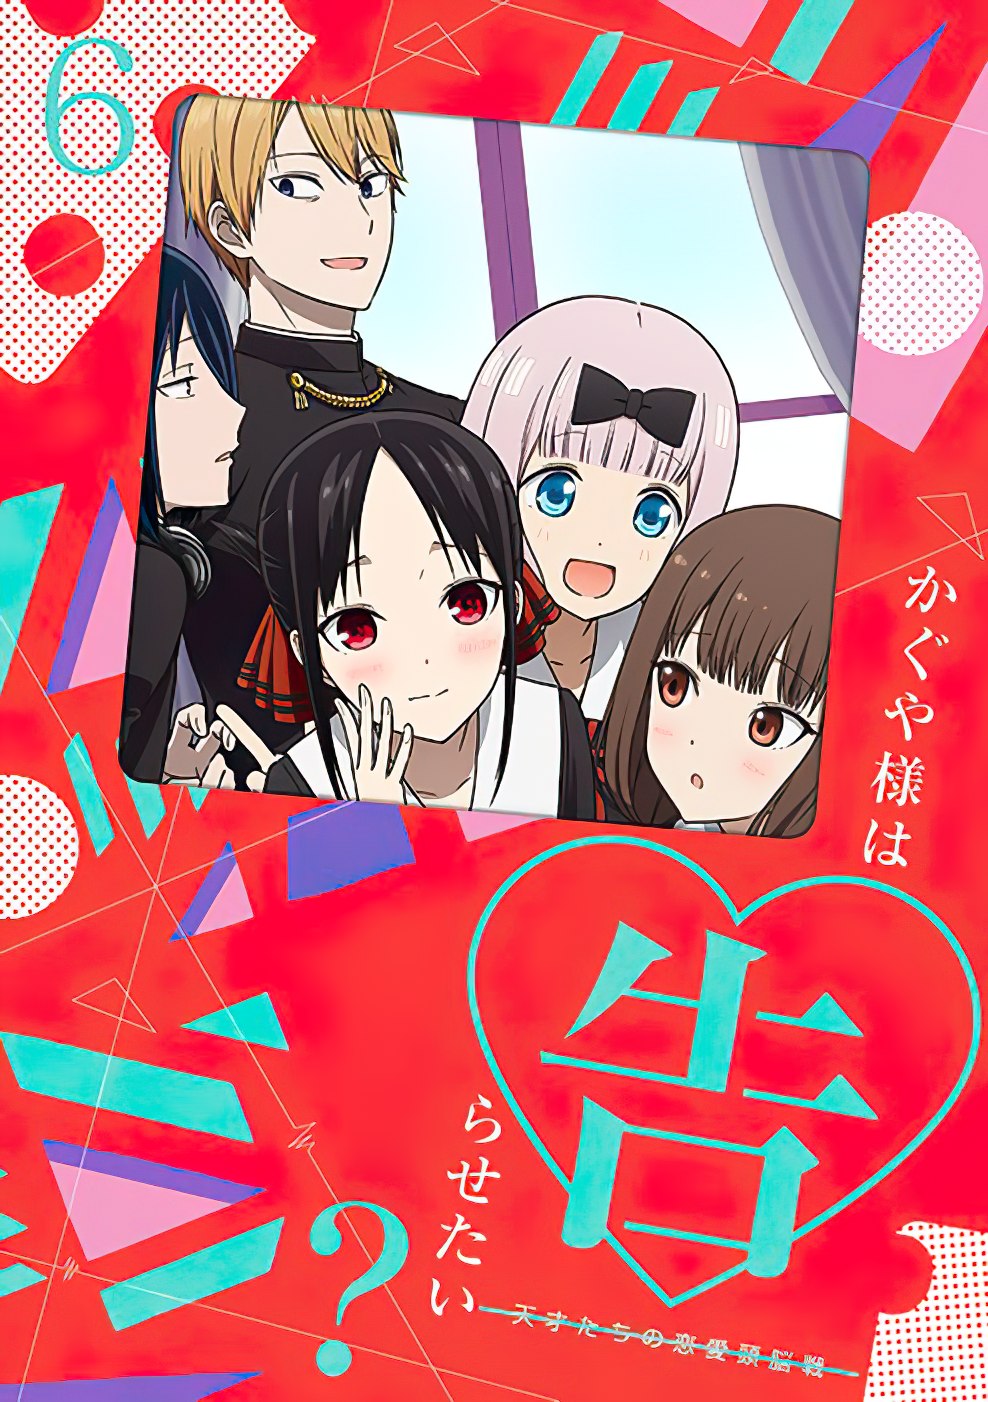 Kudasai - Tal como había sido anunciado previamente, las dos temporadas de  la adaptación animada de Kaguya-sama: Love is War ya están disponibles  con doblaje al español latino en la plataforma Funimation.